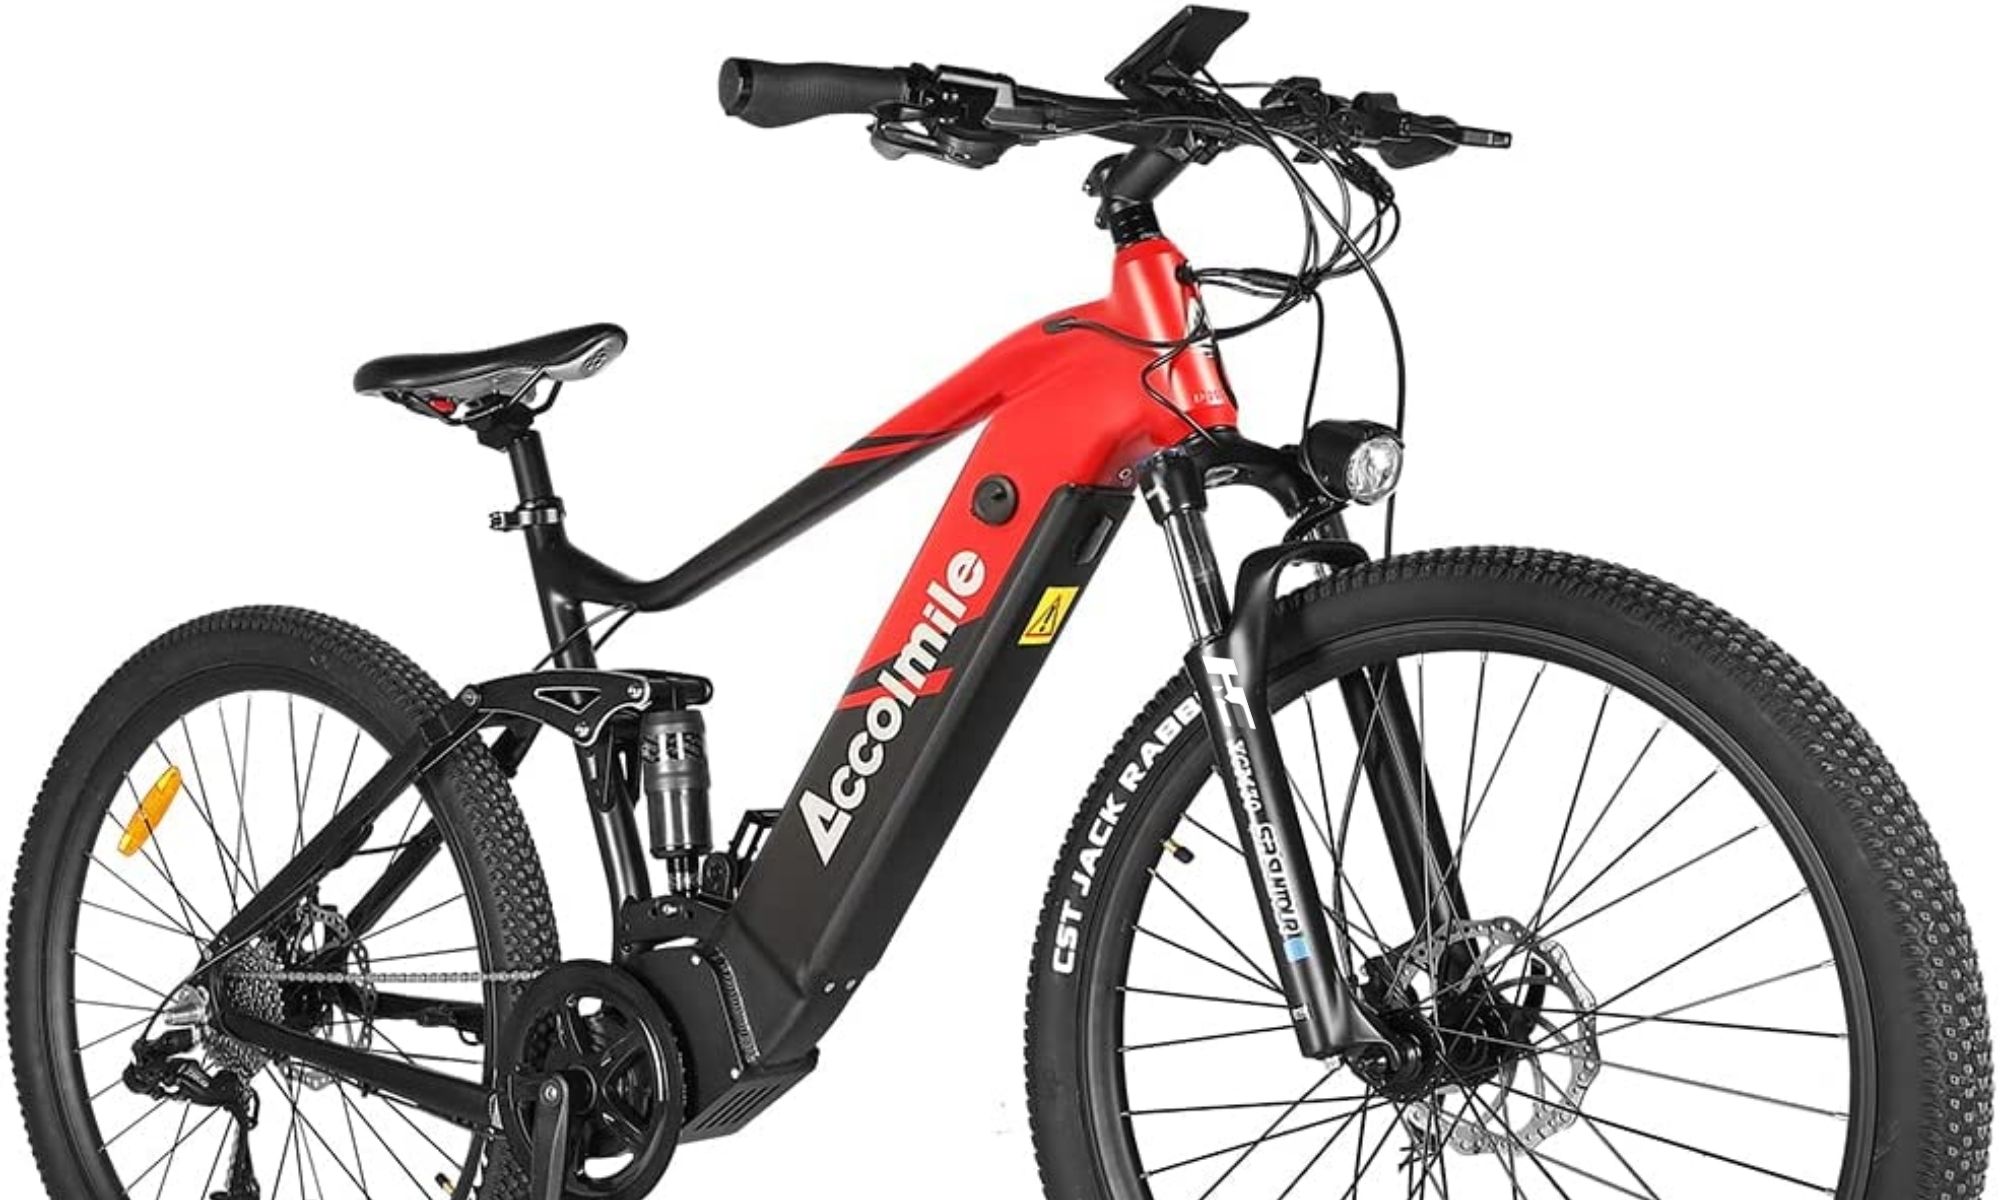 Bicicleta eléctrica montaña 29 doble suspensión E-EXPL 520 S Rojo 500 Wh